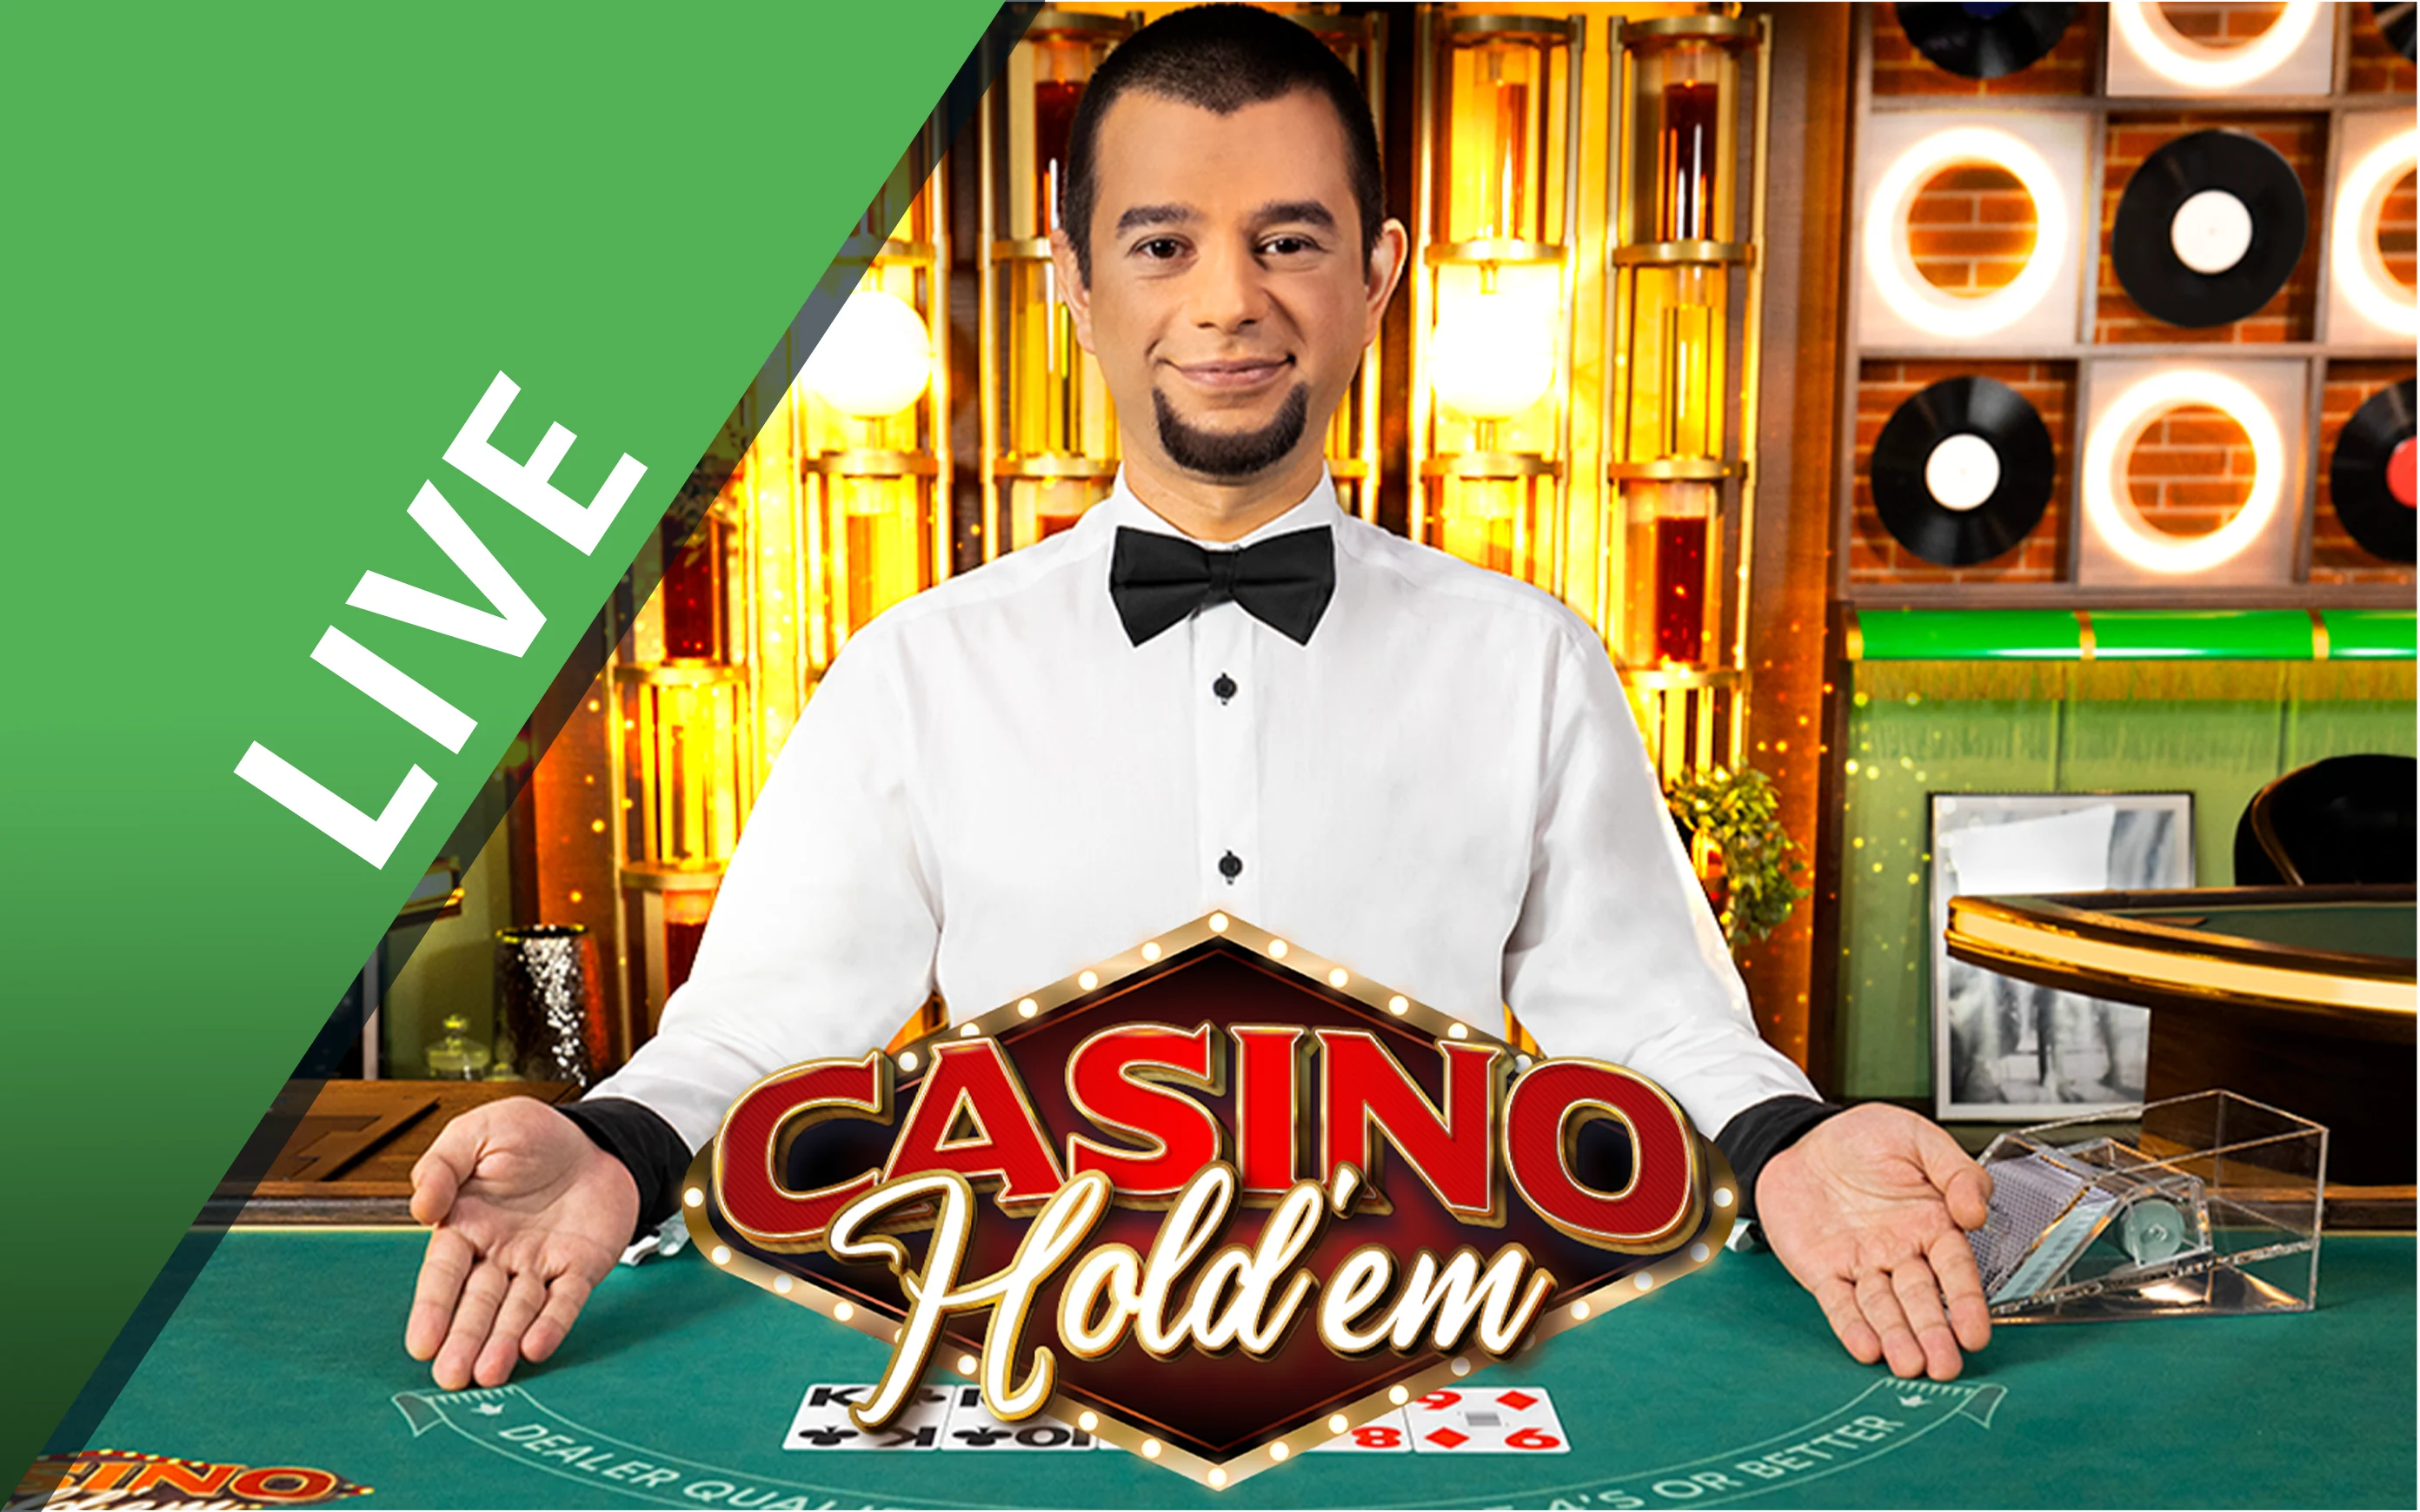 Gioca a Casino Hold'em sul casino online Starcasino.be